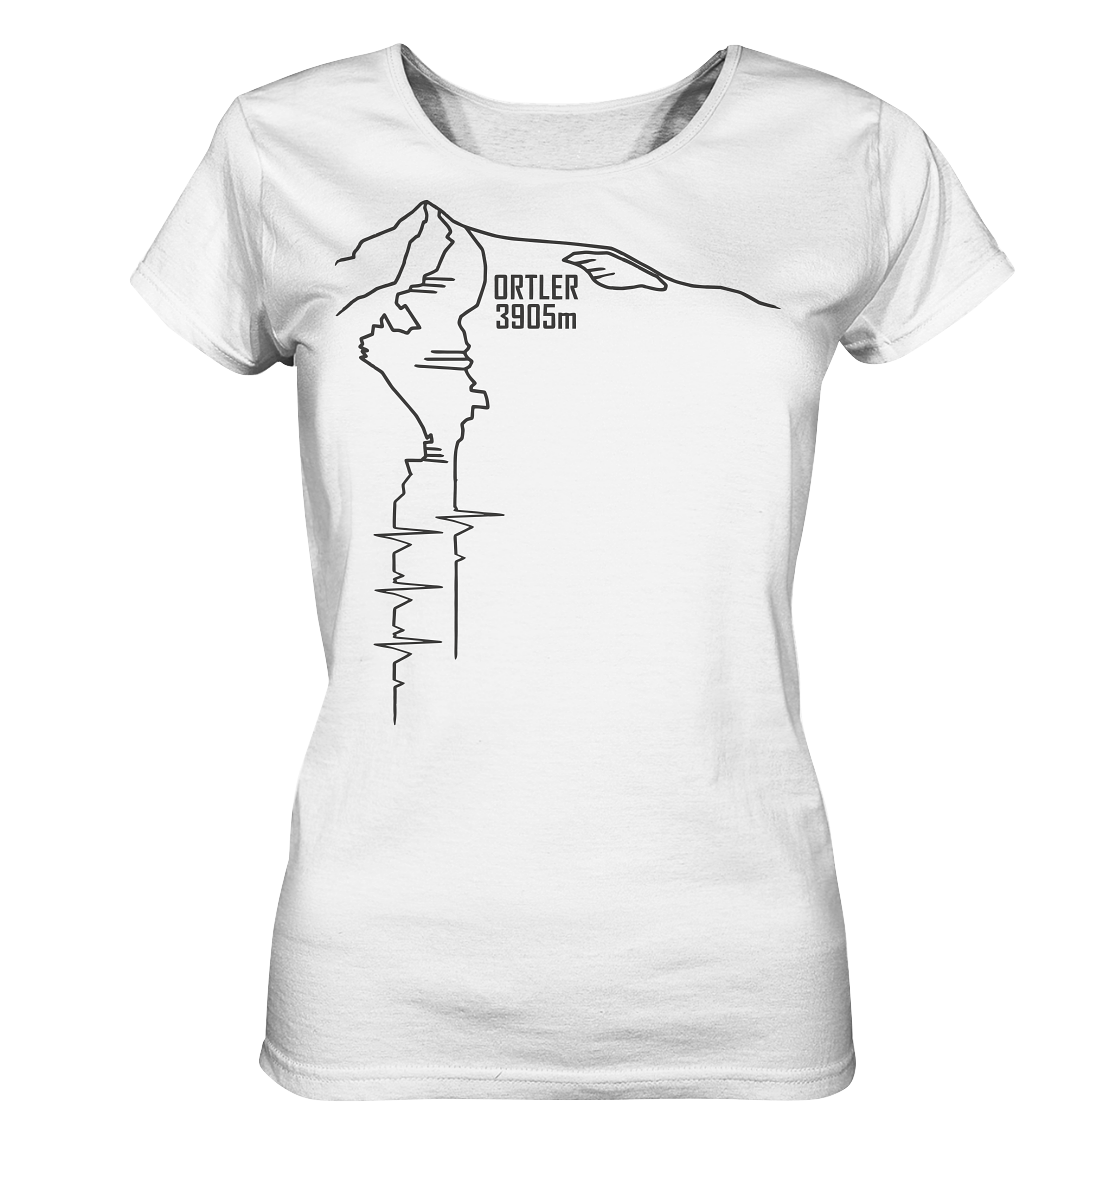 Ortler Nordwand - Ladies Organic Basic Shirt